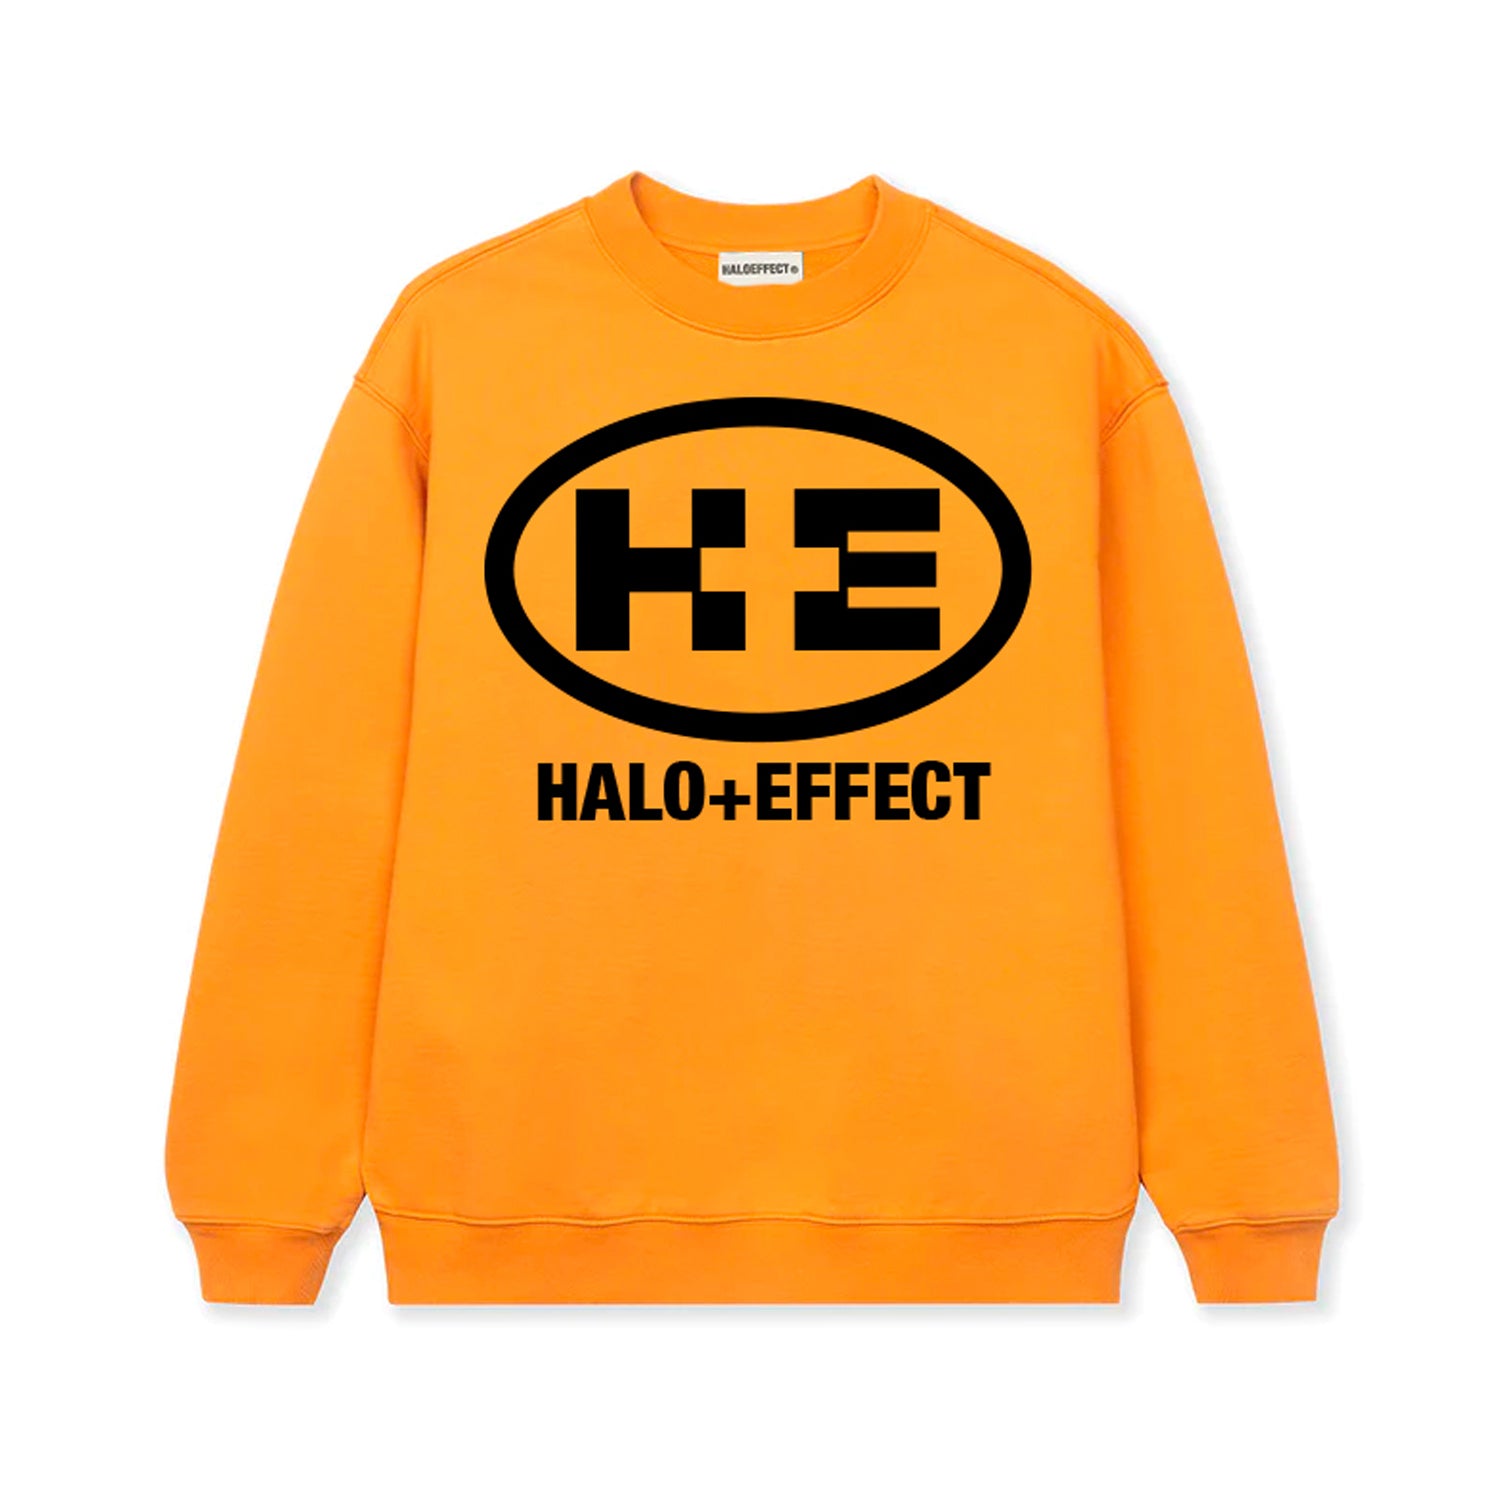 HALO+EFFECT SWEATSHIRT (ORANGE)